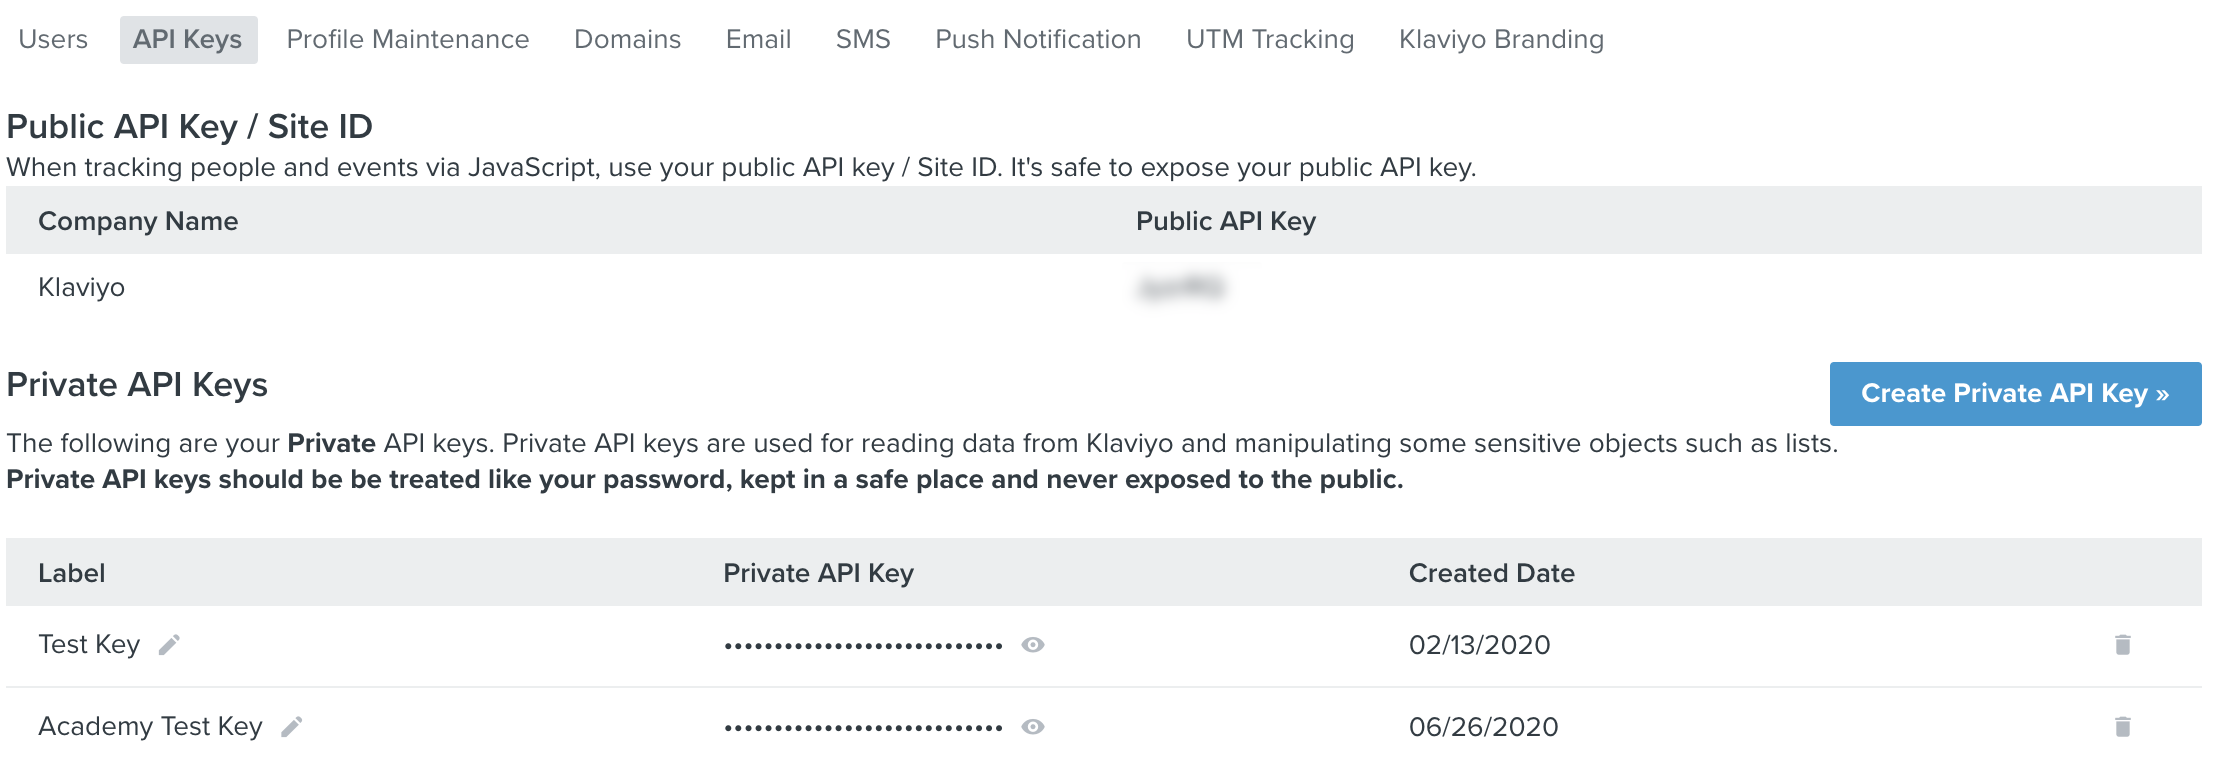 Klaviyo API keys tab showing public and private keys, and Create Private API Key with arrow and blue background